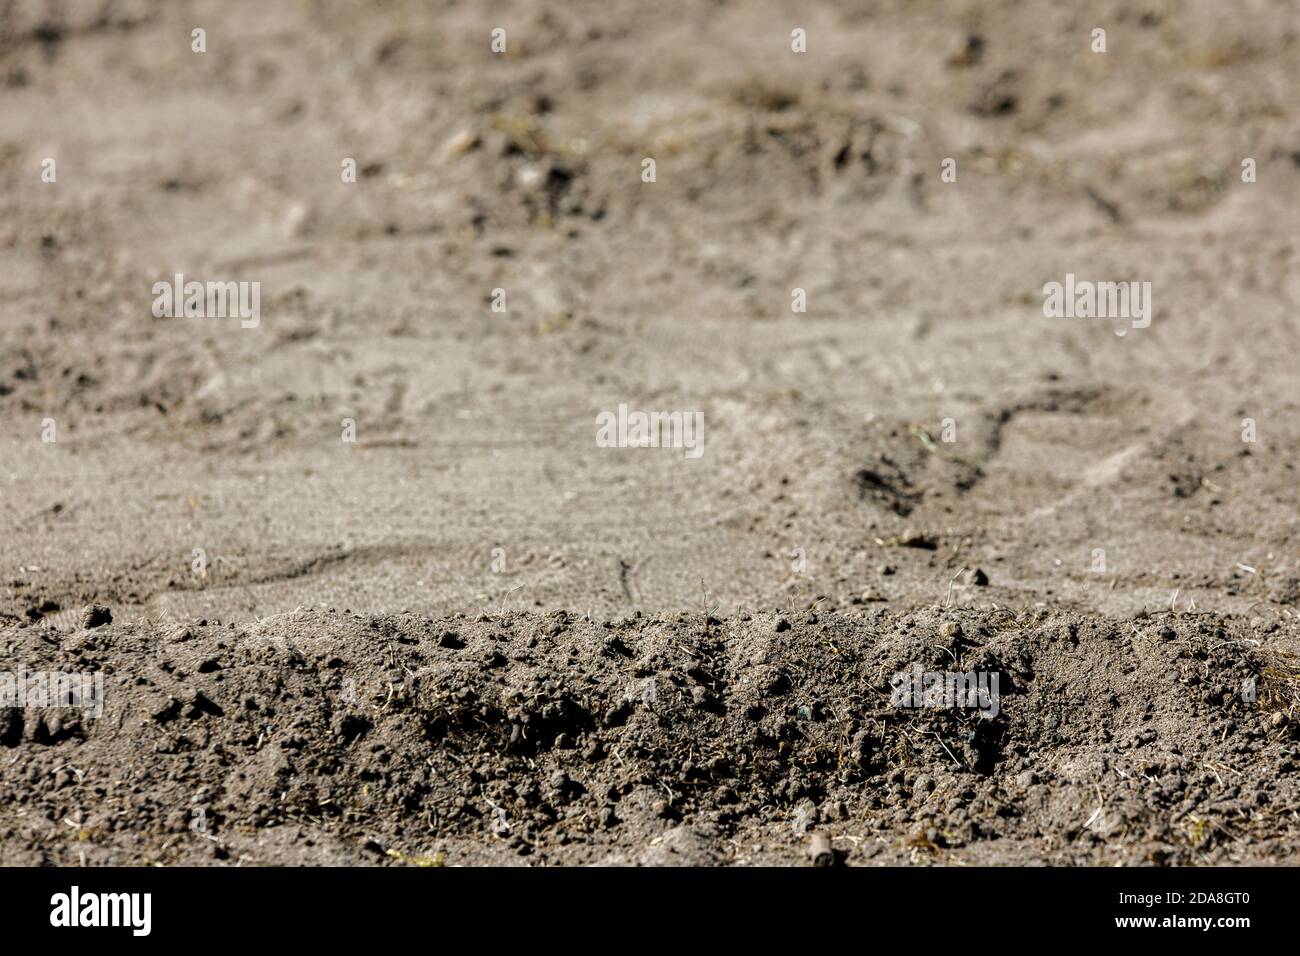 Low-Angle-Aufnahme einer Sand- und Kiesoberfläche, trockener Sand oder ähnlich einer Wüstenszene, heller Tageslichtzustand, der Staub oder Schmutz zeigt Stockfoto